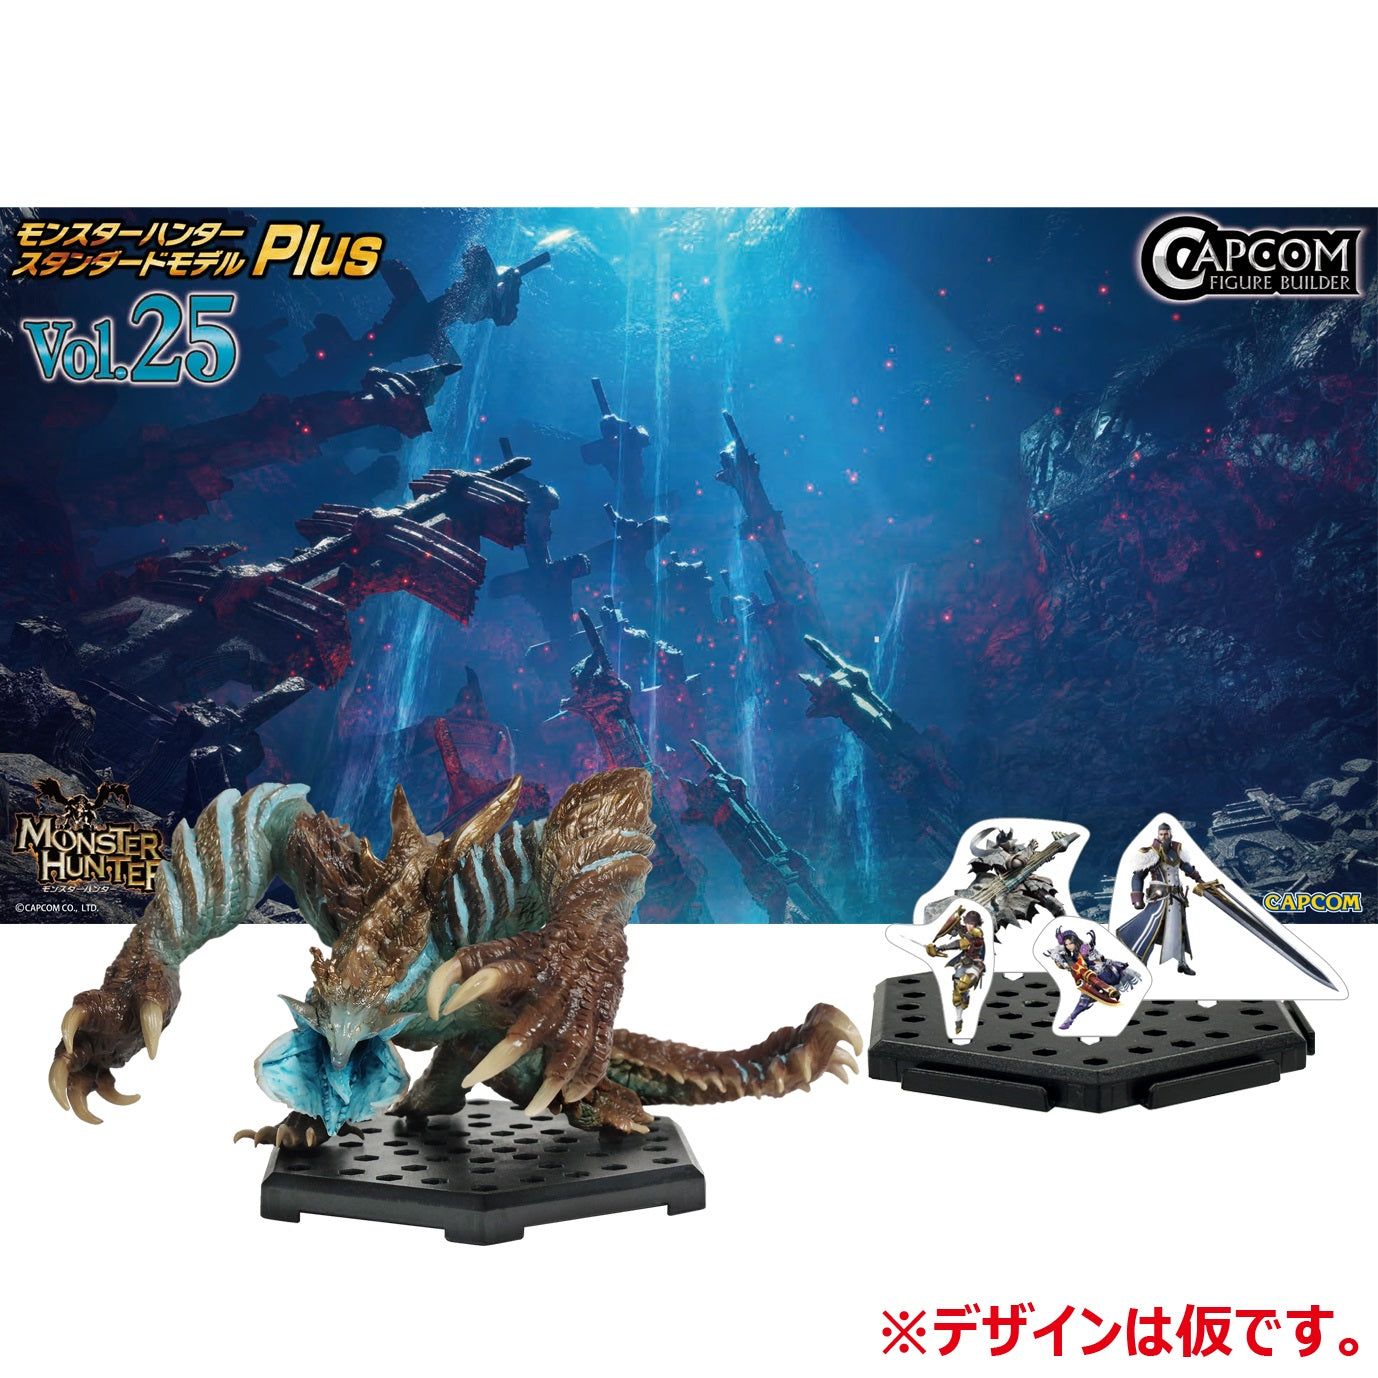 Capcom Figures: Monster Hunter - Monster Hunter Standard Model Plus Serie 25 Figura Sorpresa